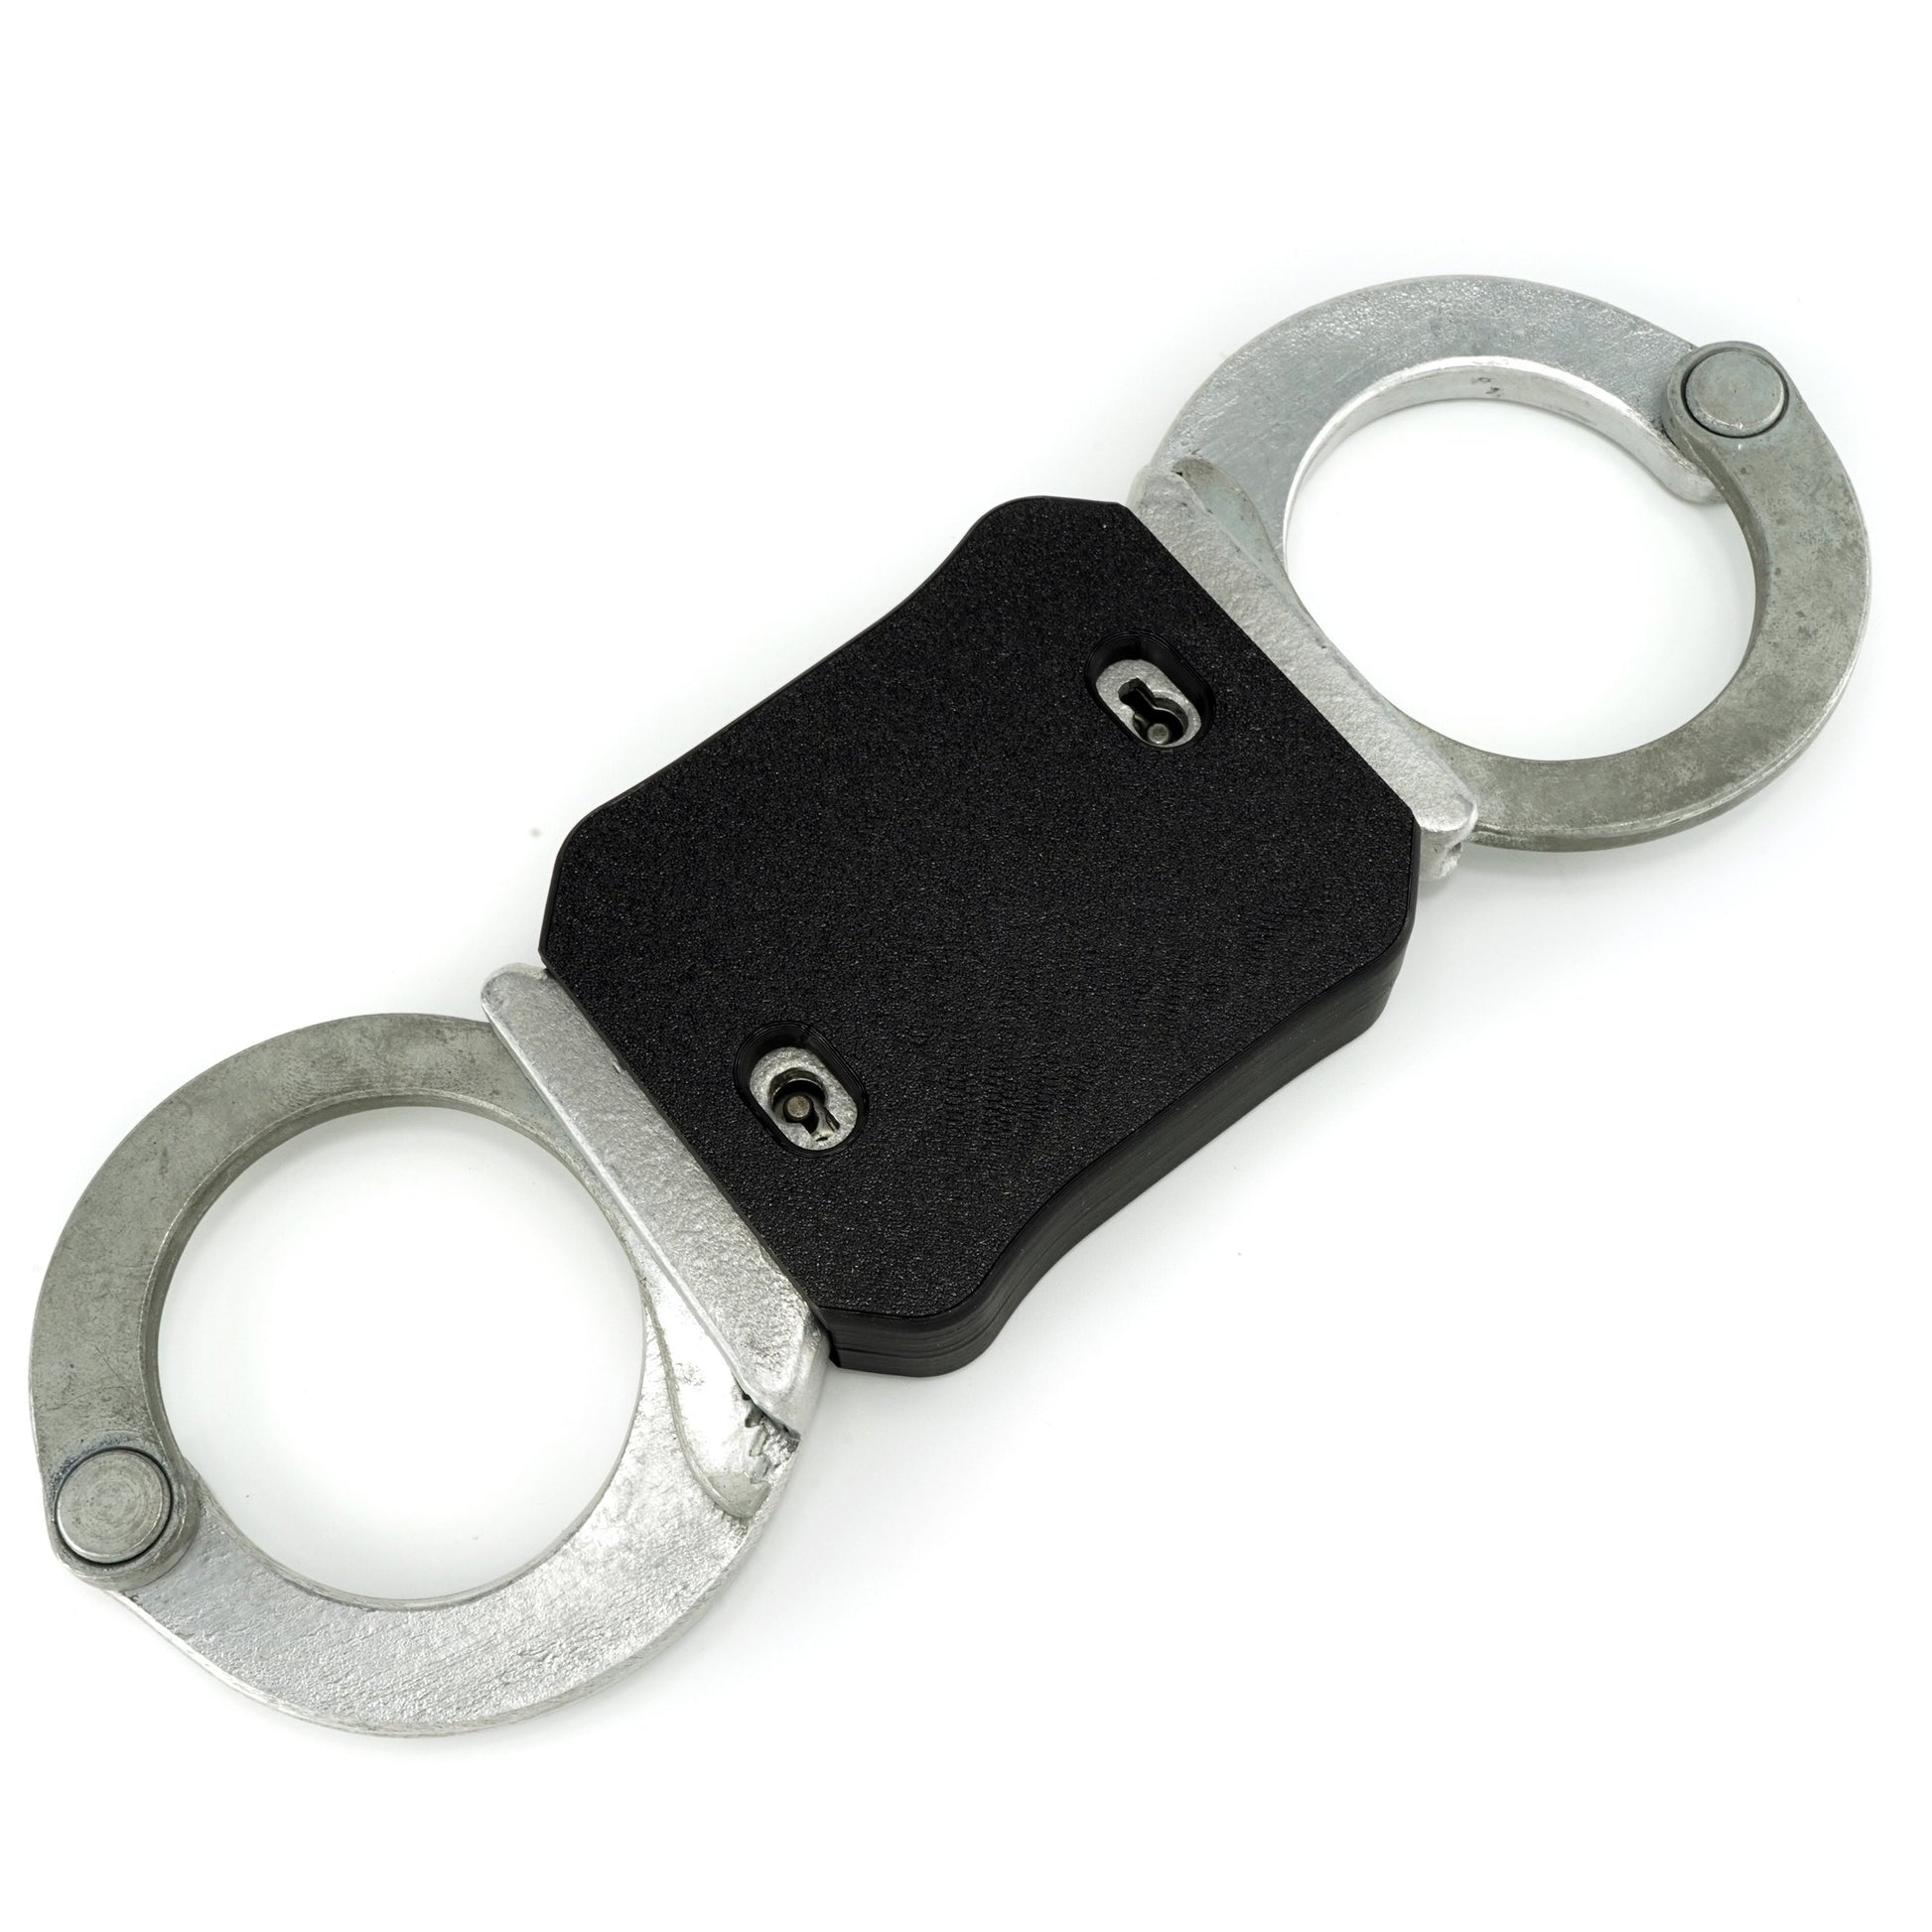 MakeItRigid stiffener for handcuffs "Schutzmarke Deutsche Polizei"